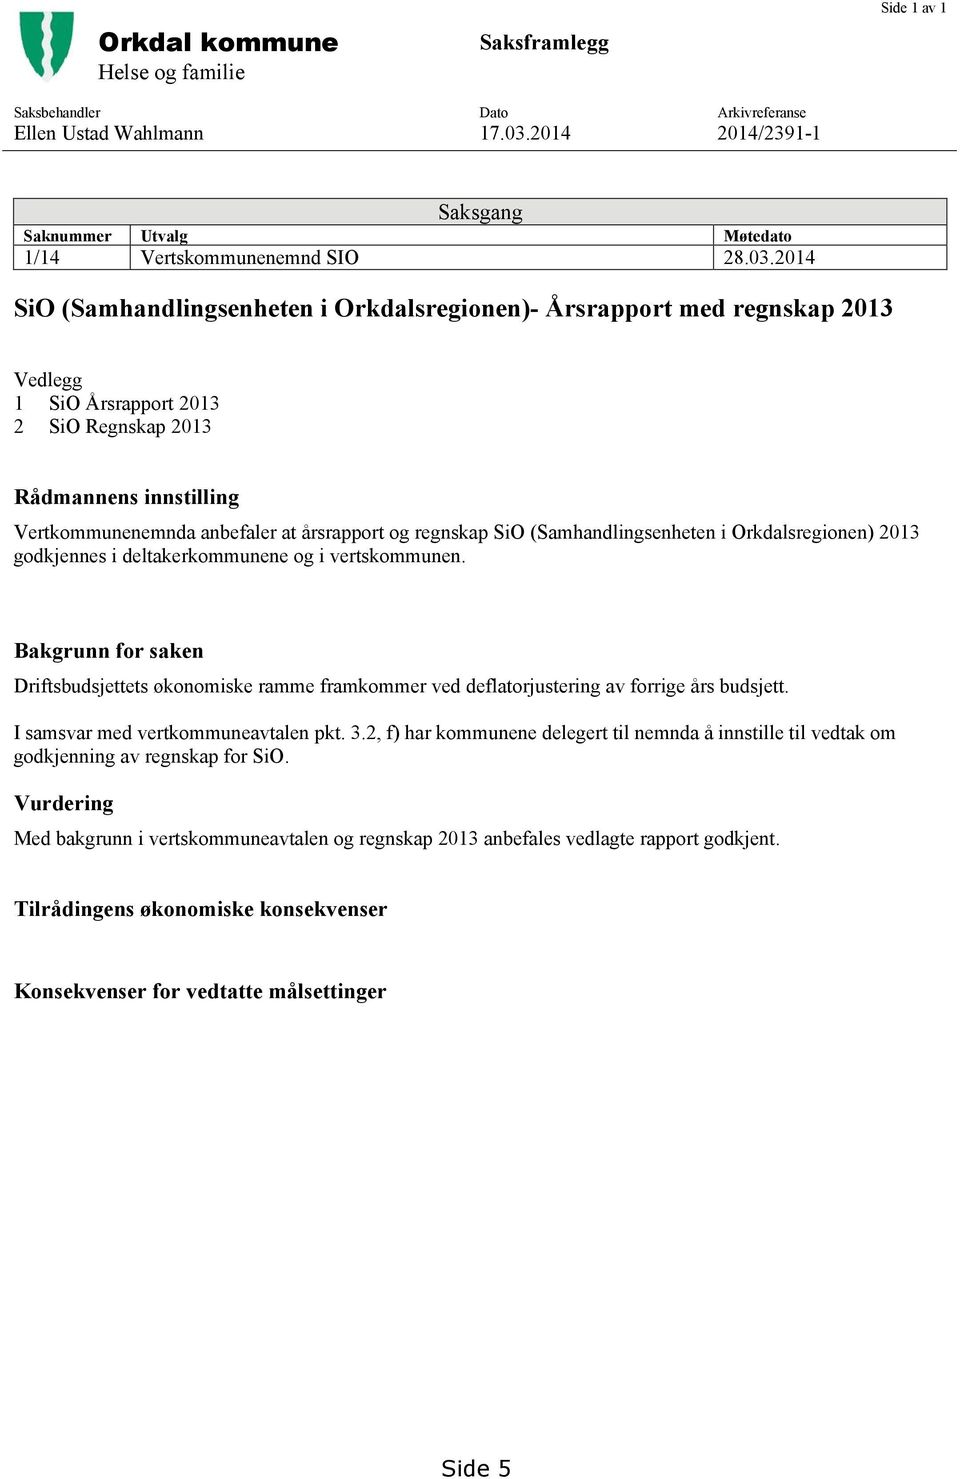 regnskap SiO (Samhandlingsenheten i Orkdalsregionen) 2013 godkjennes i deltakerkommunene og i vertskommunen.